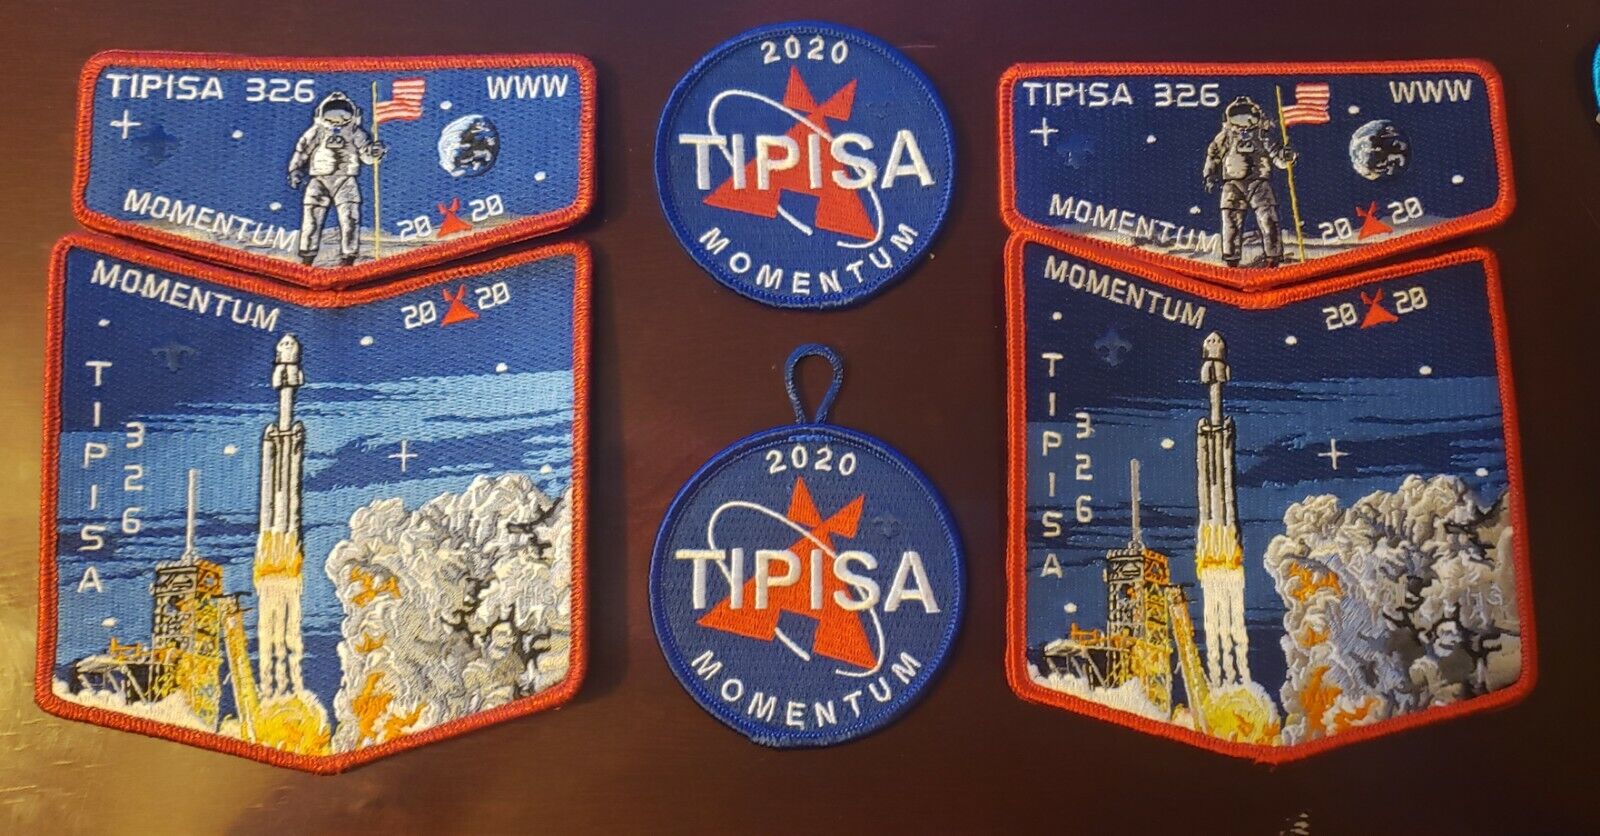 Boy Scout OA 326 Tipisa Lodge 2020 Momentum Central Florida Council NASA Set